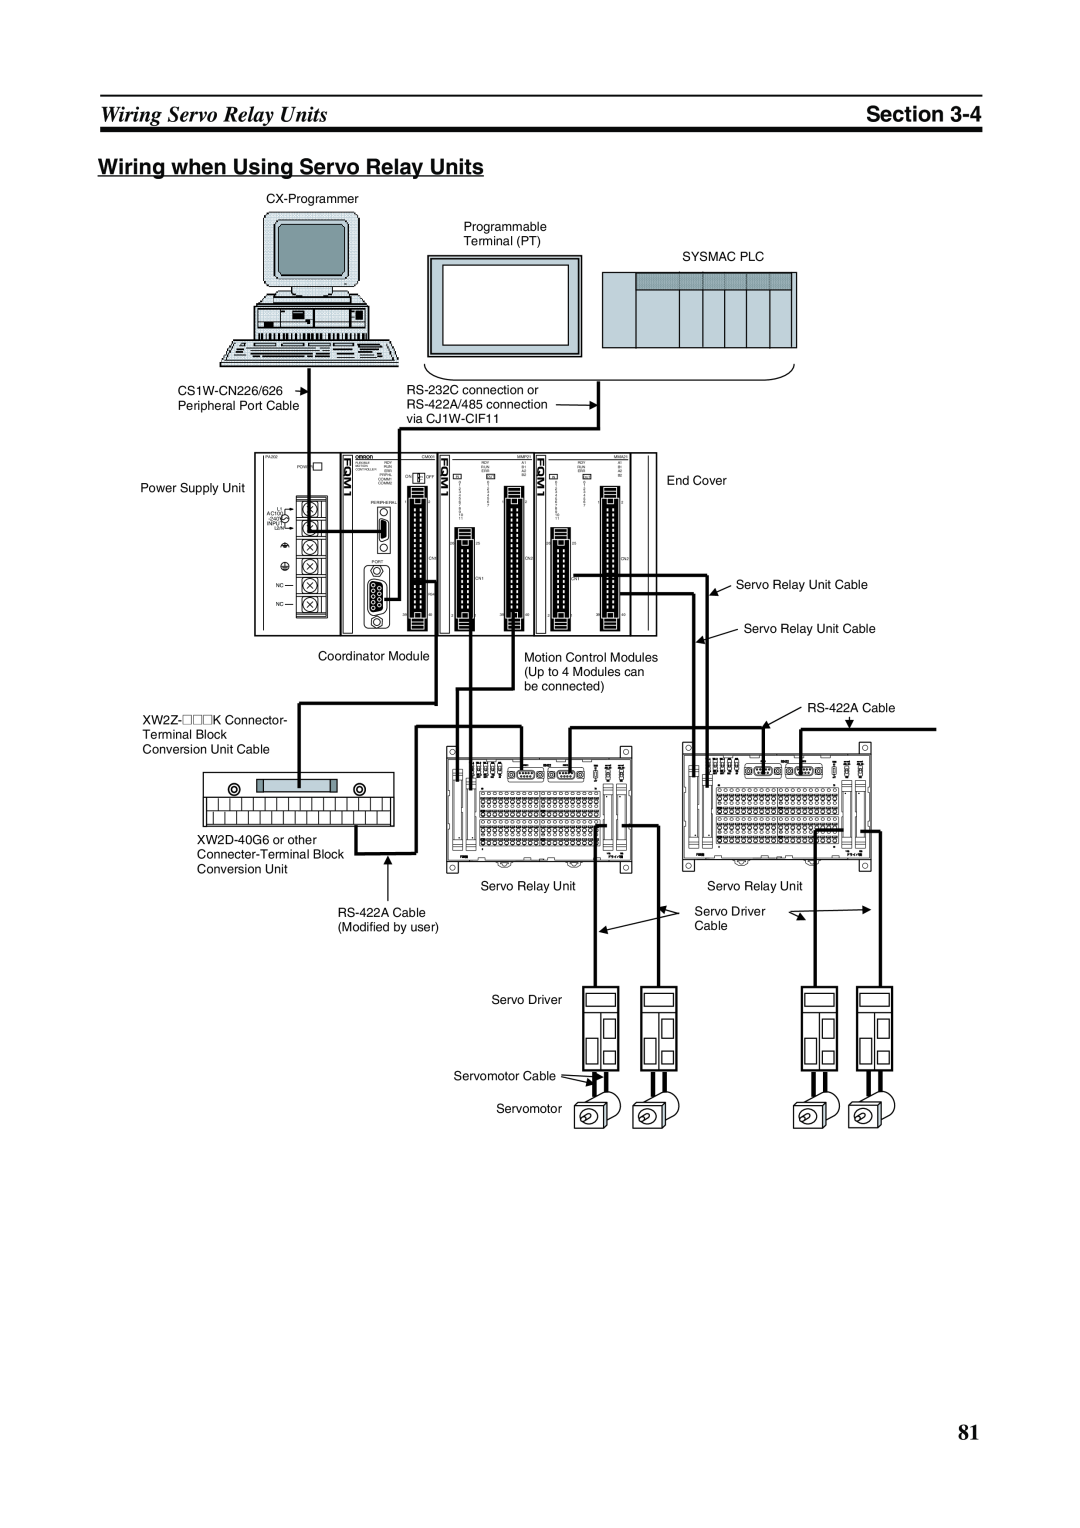 Omron FQM1-MMP21, FQM1-CM001, FQM1-MMA21 Wiring Servo Relay Units, Section, Wiring when Using Servo Relay Units 